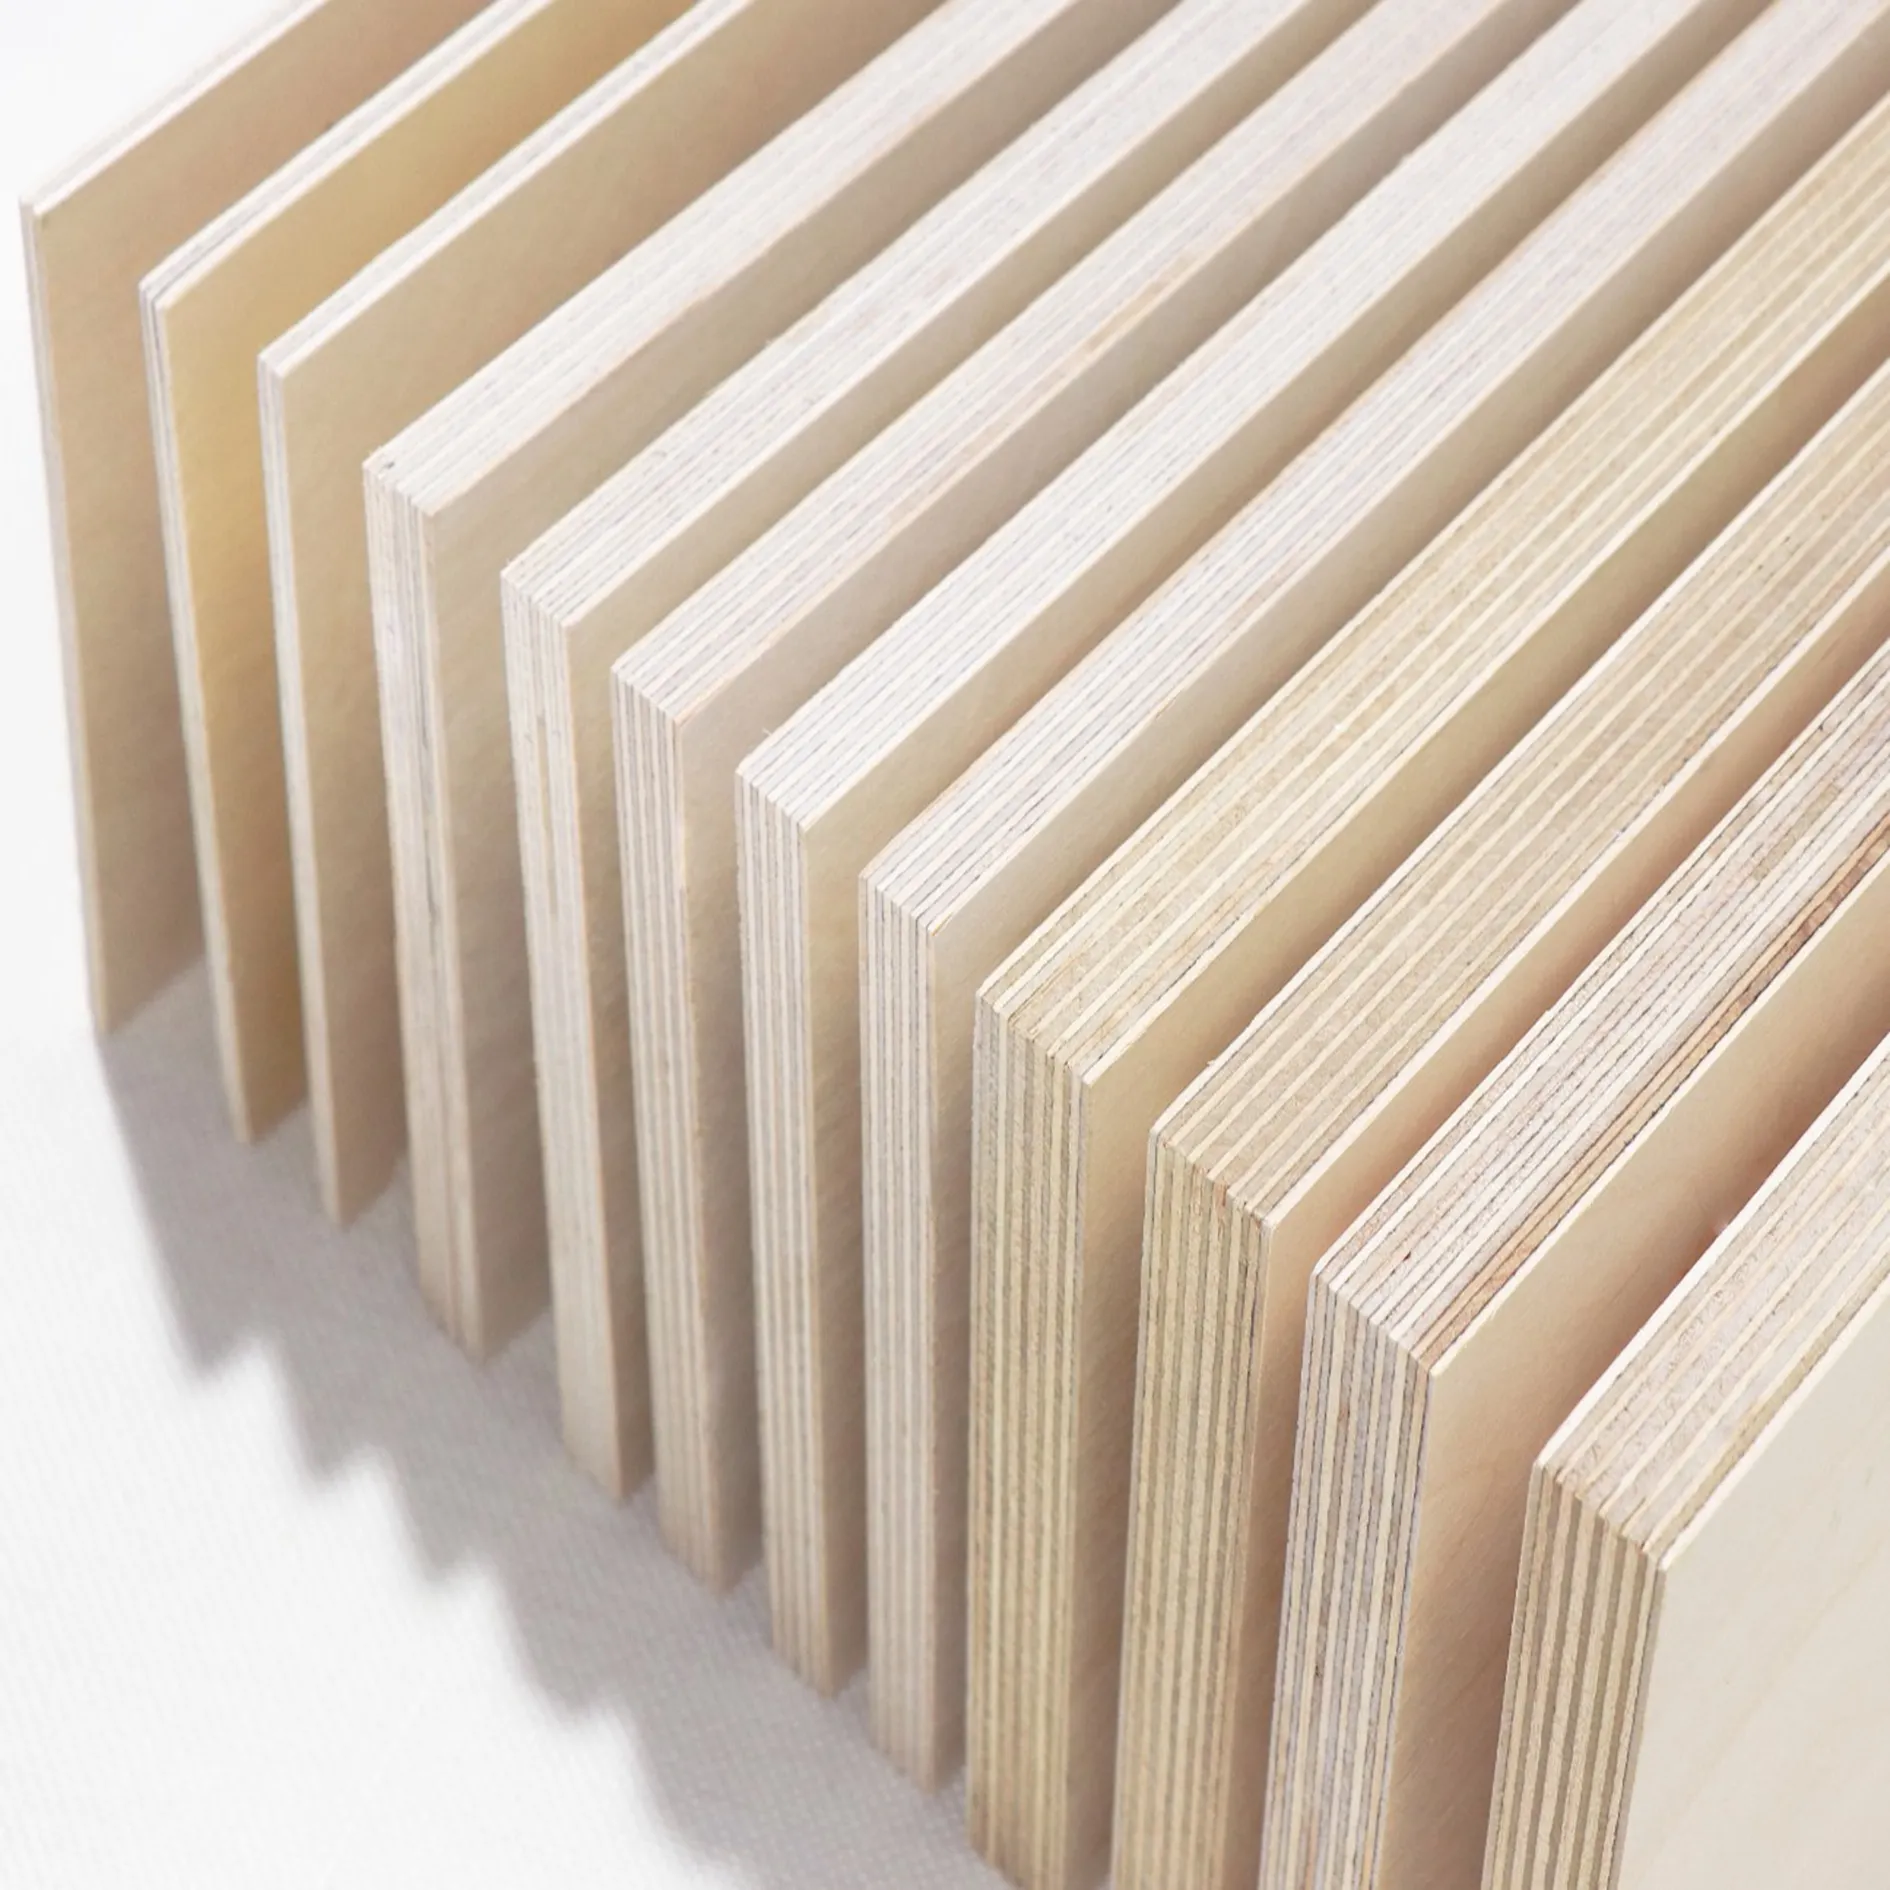 JIAMUJIA 18mm poplar core birch veneer plywood for furniture